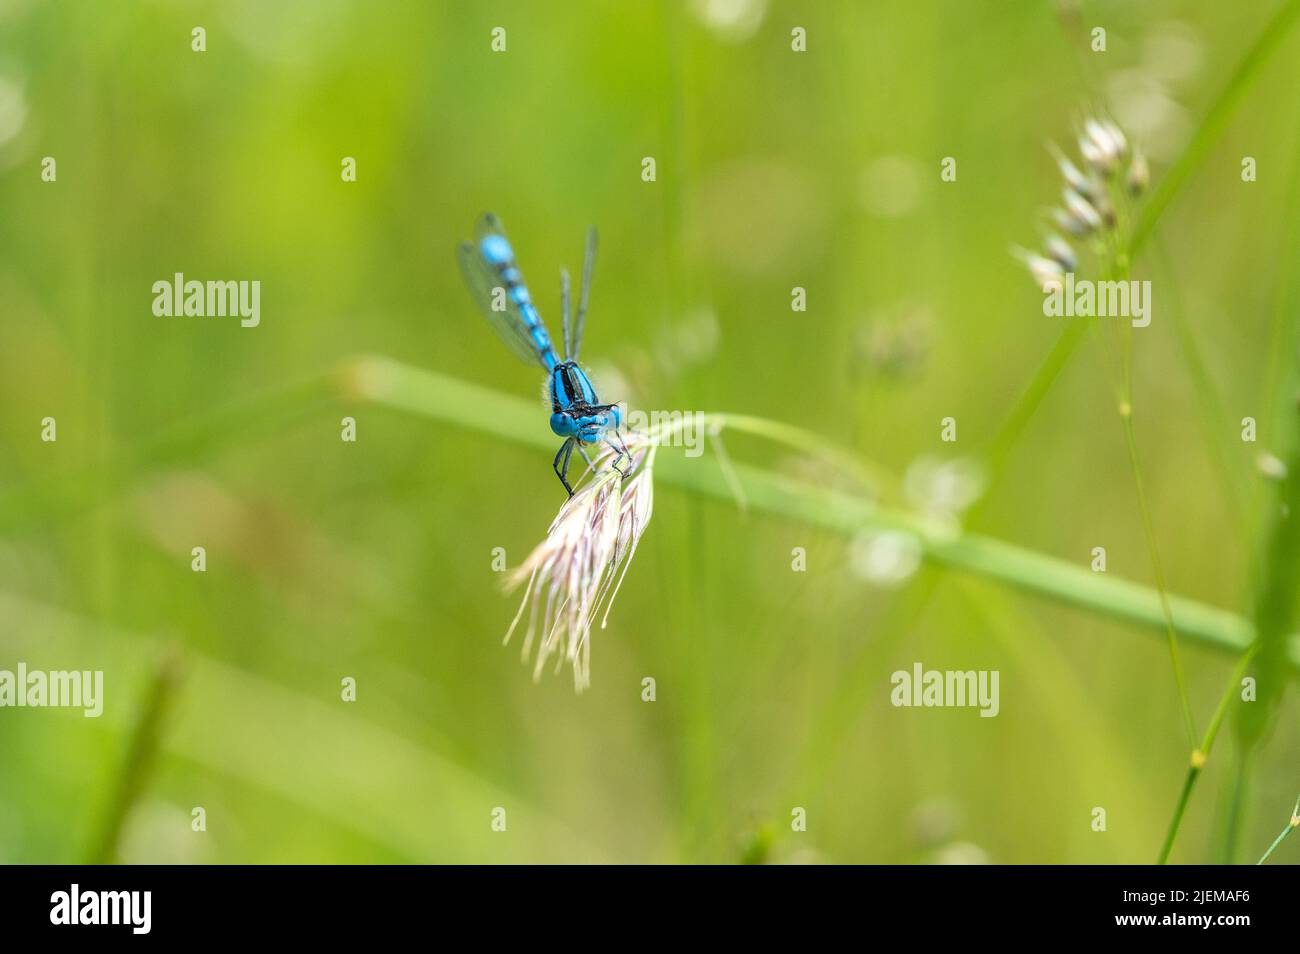 La mouche à damselfly bleue commune repose sur la tête de semence d'herbe Banque D'Images